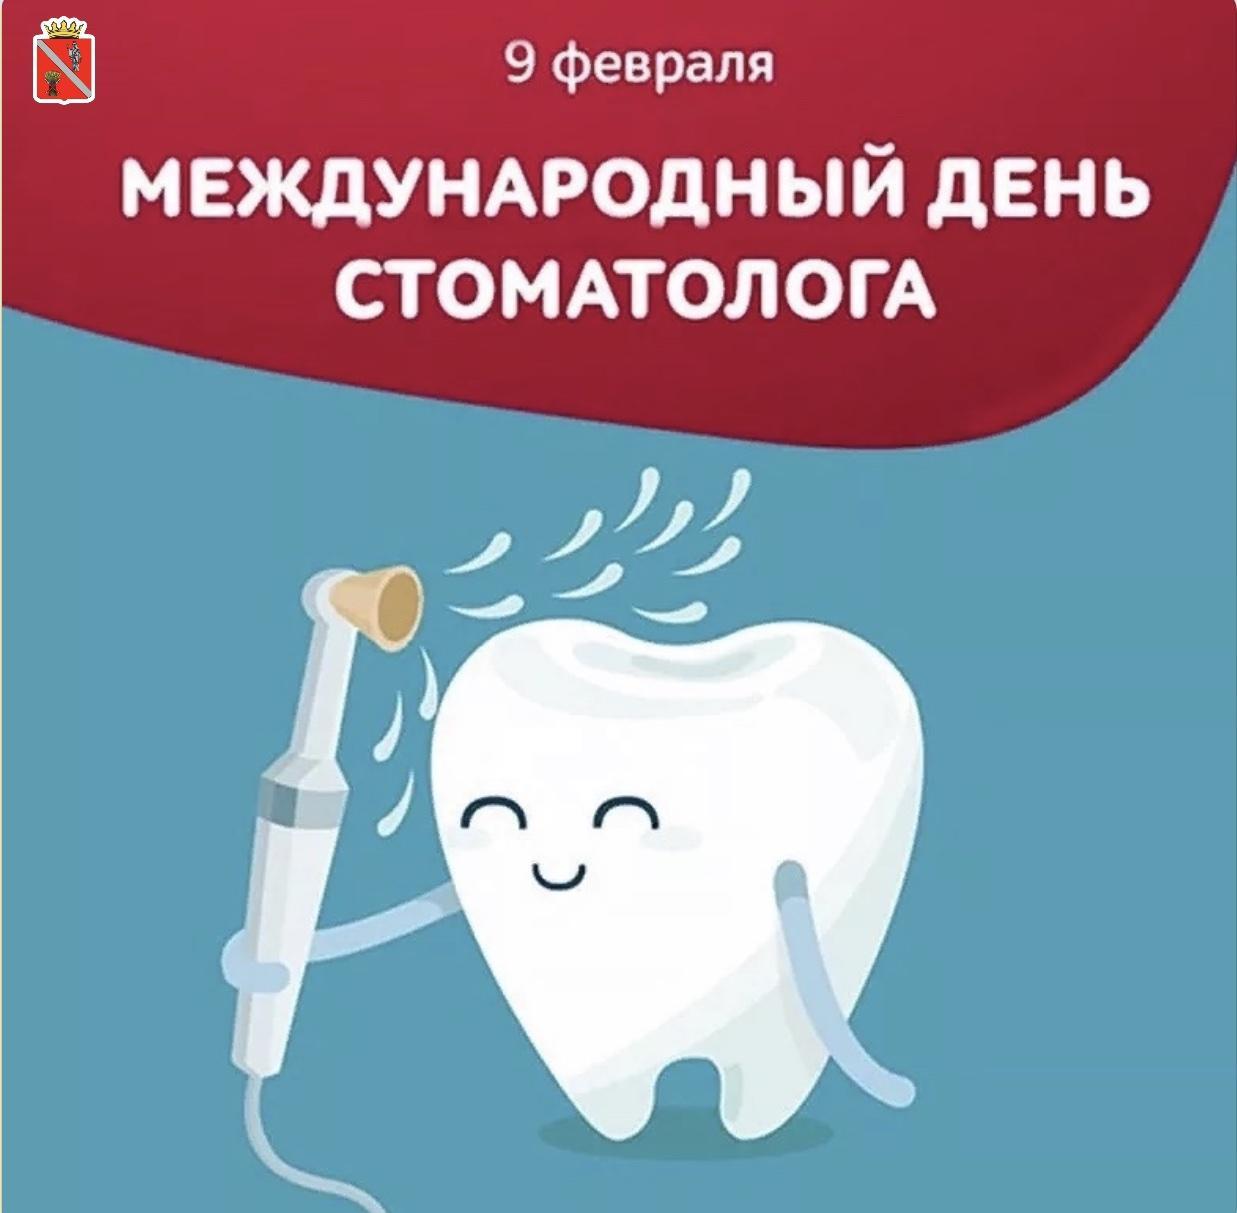 9 февраля день стоматолога